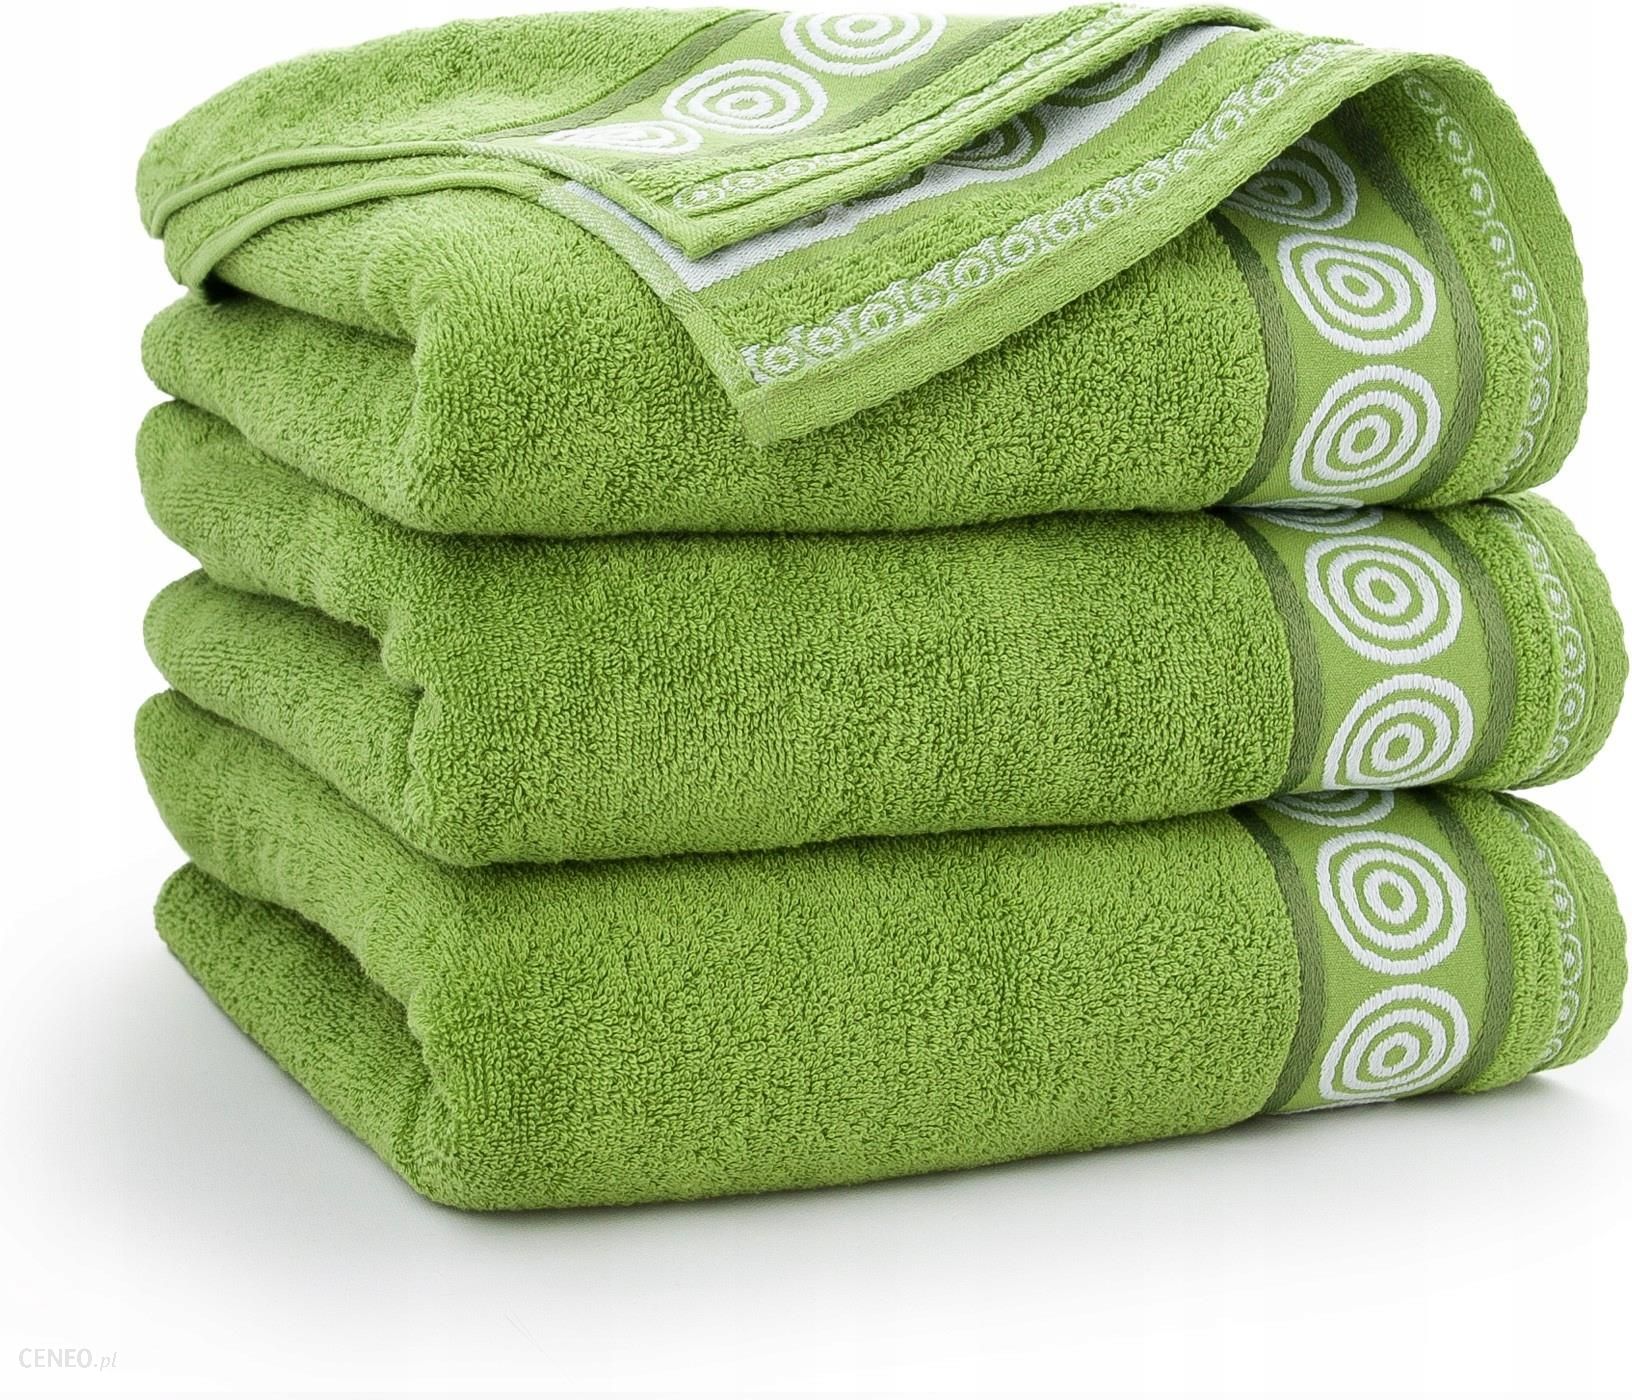 Куплю дешево полотенца